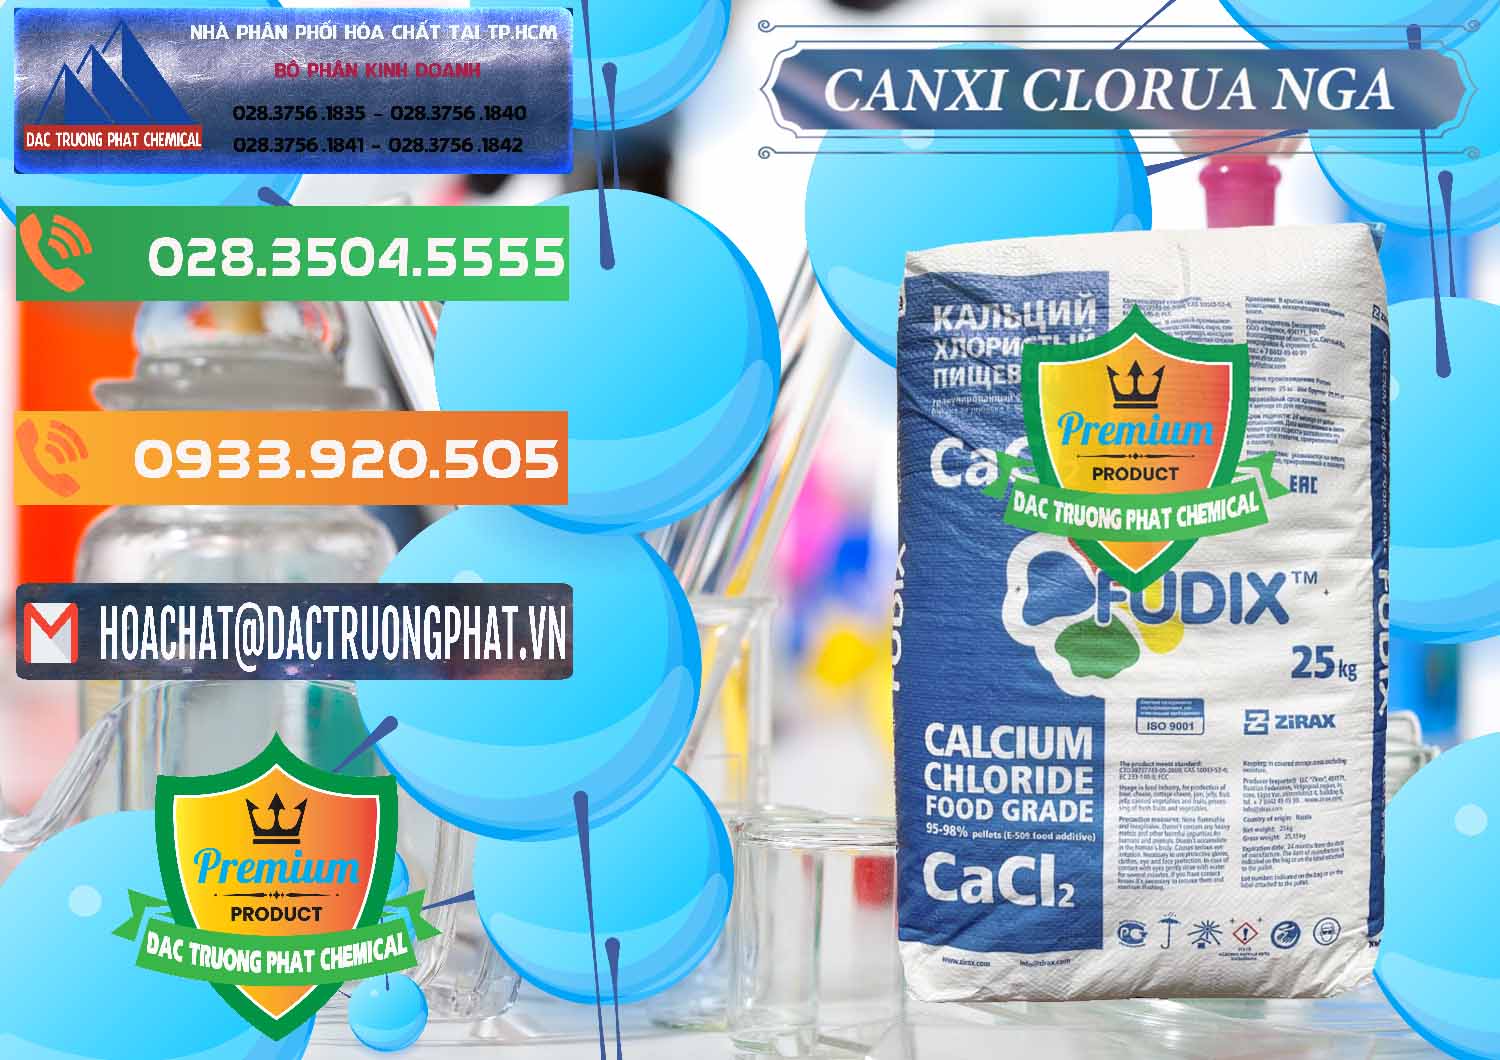 Nơi cung ứng và bán CaCl2 – Canxi Clorua Nga Russia - 0430 - Cty chuyên bán ( cung cấp ) hóa chất tại TP.HCM - hoachatxulynuoc.com.vn